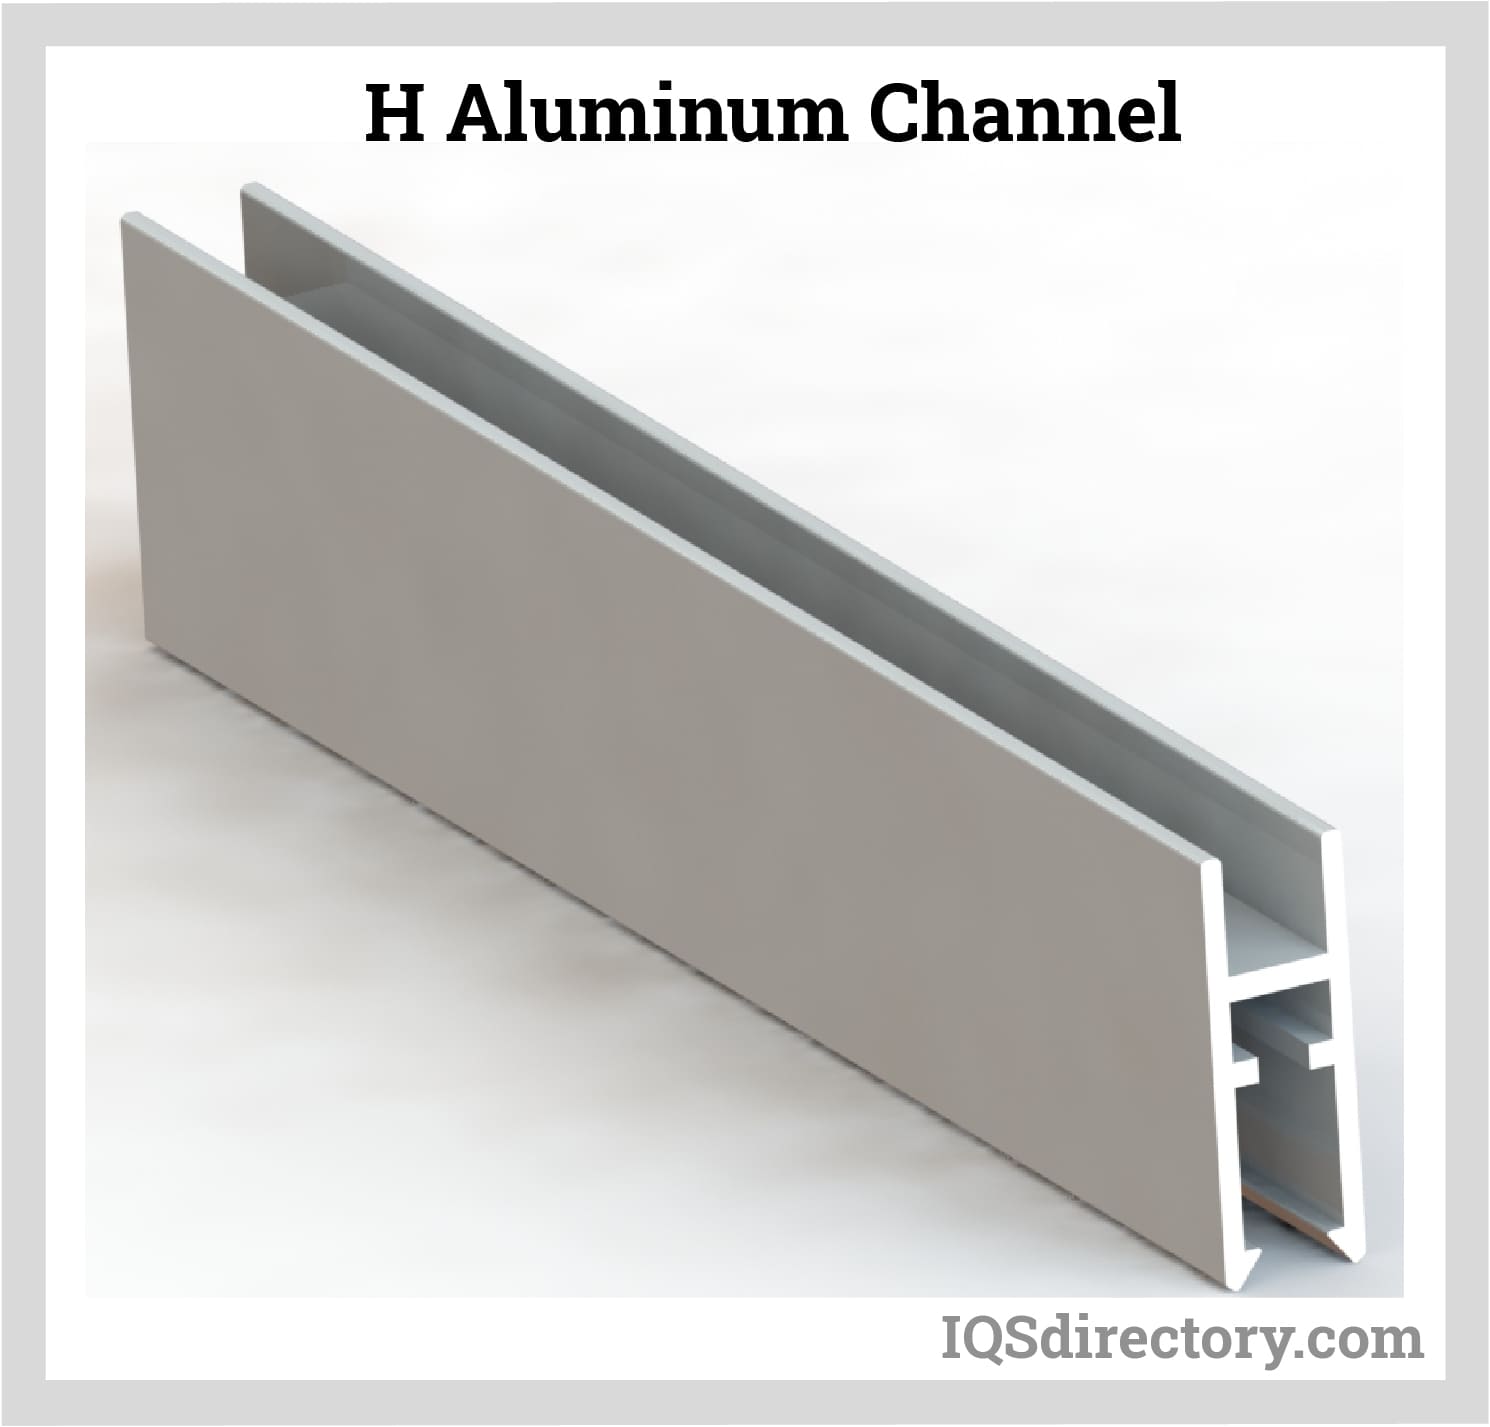 H Aluminum Channel